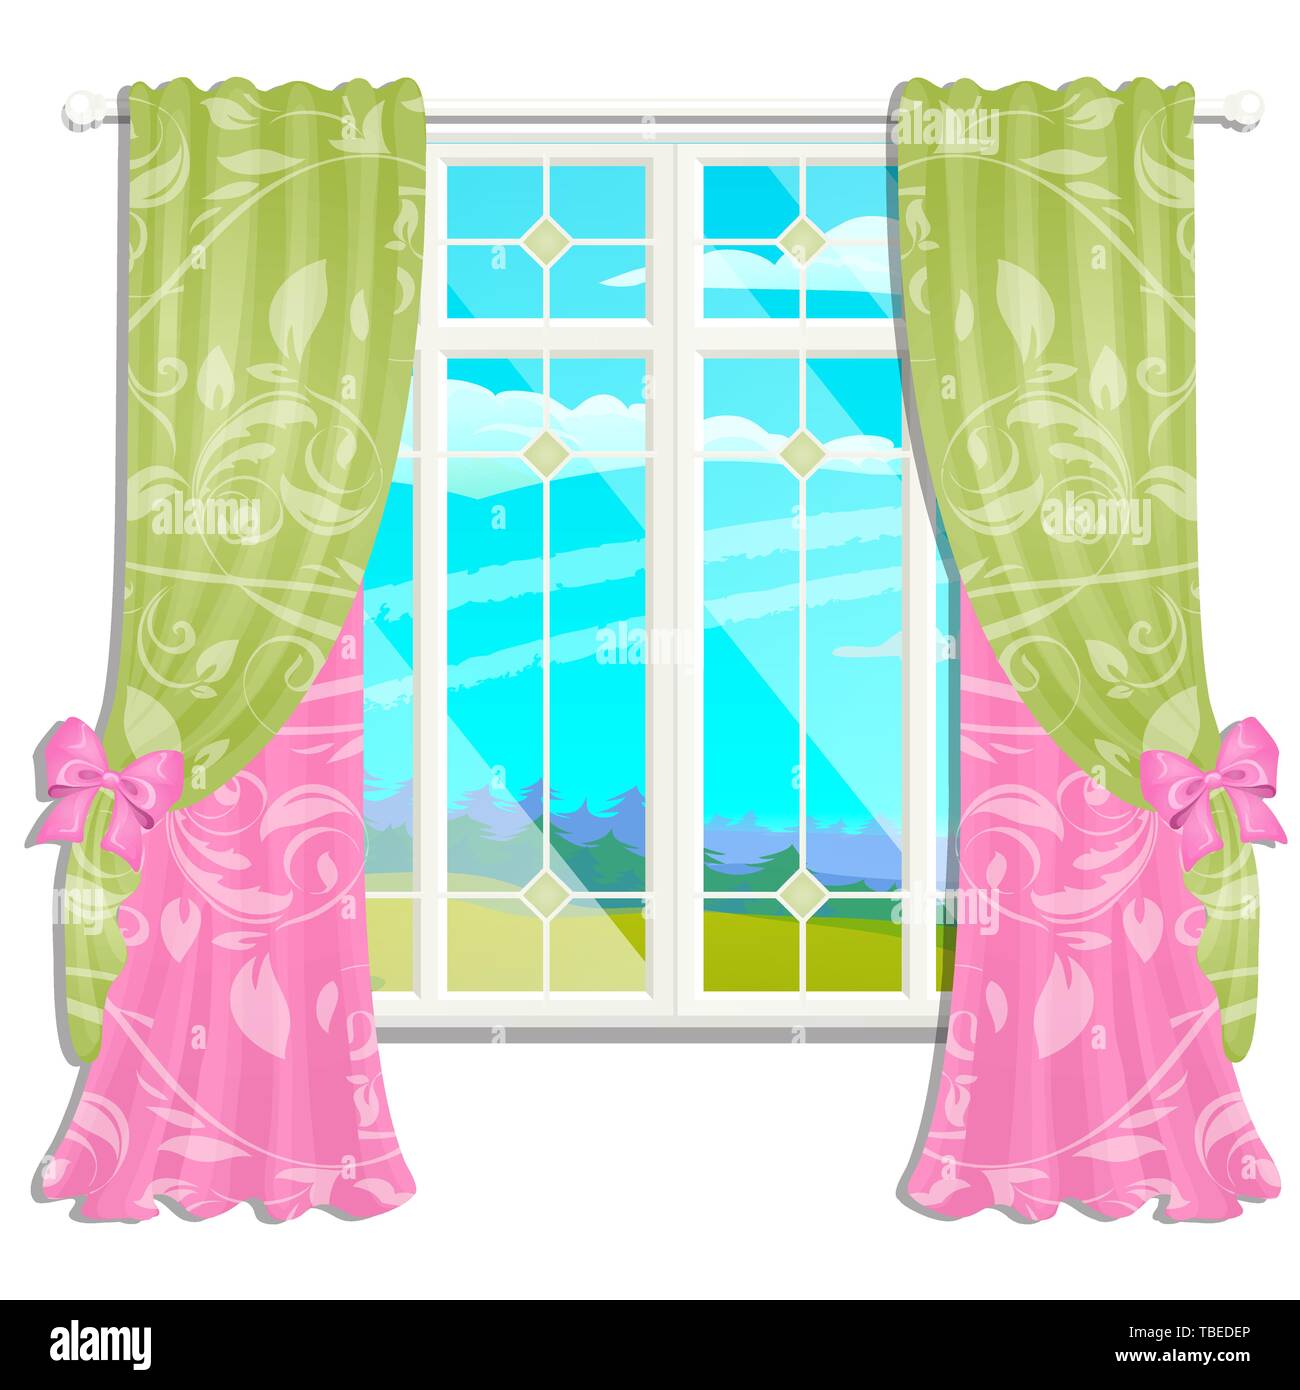 La finestra che si affaccia sul prato soleggiato di erba verde in estate isolati su sfondo bianco. Interior design luxury country house. Un bel giorno Illustrazione Vettoriale